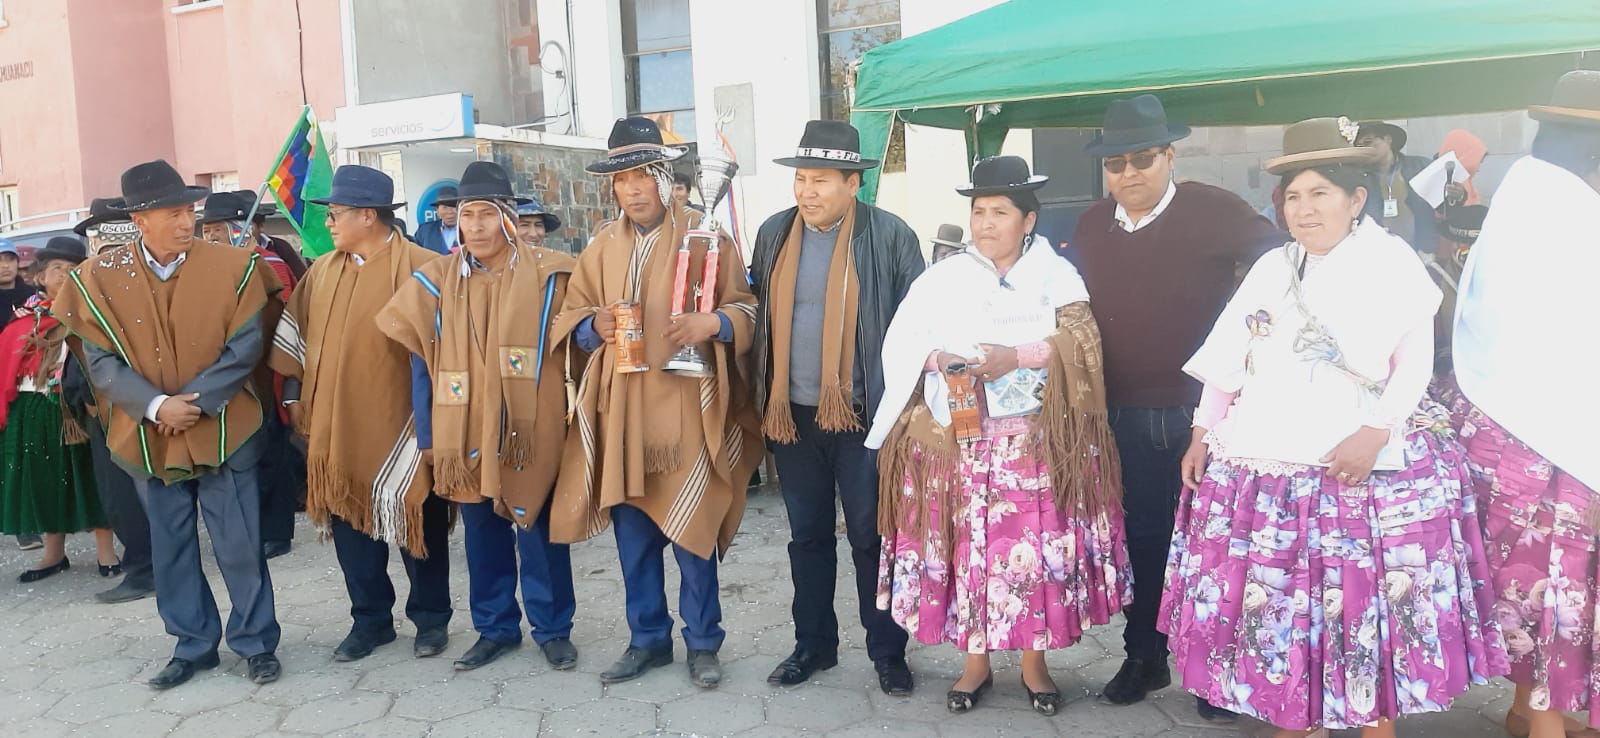 El Alcalde Flabio Apaza junto a una comitiva lideraron los actos ceremoniales